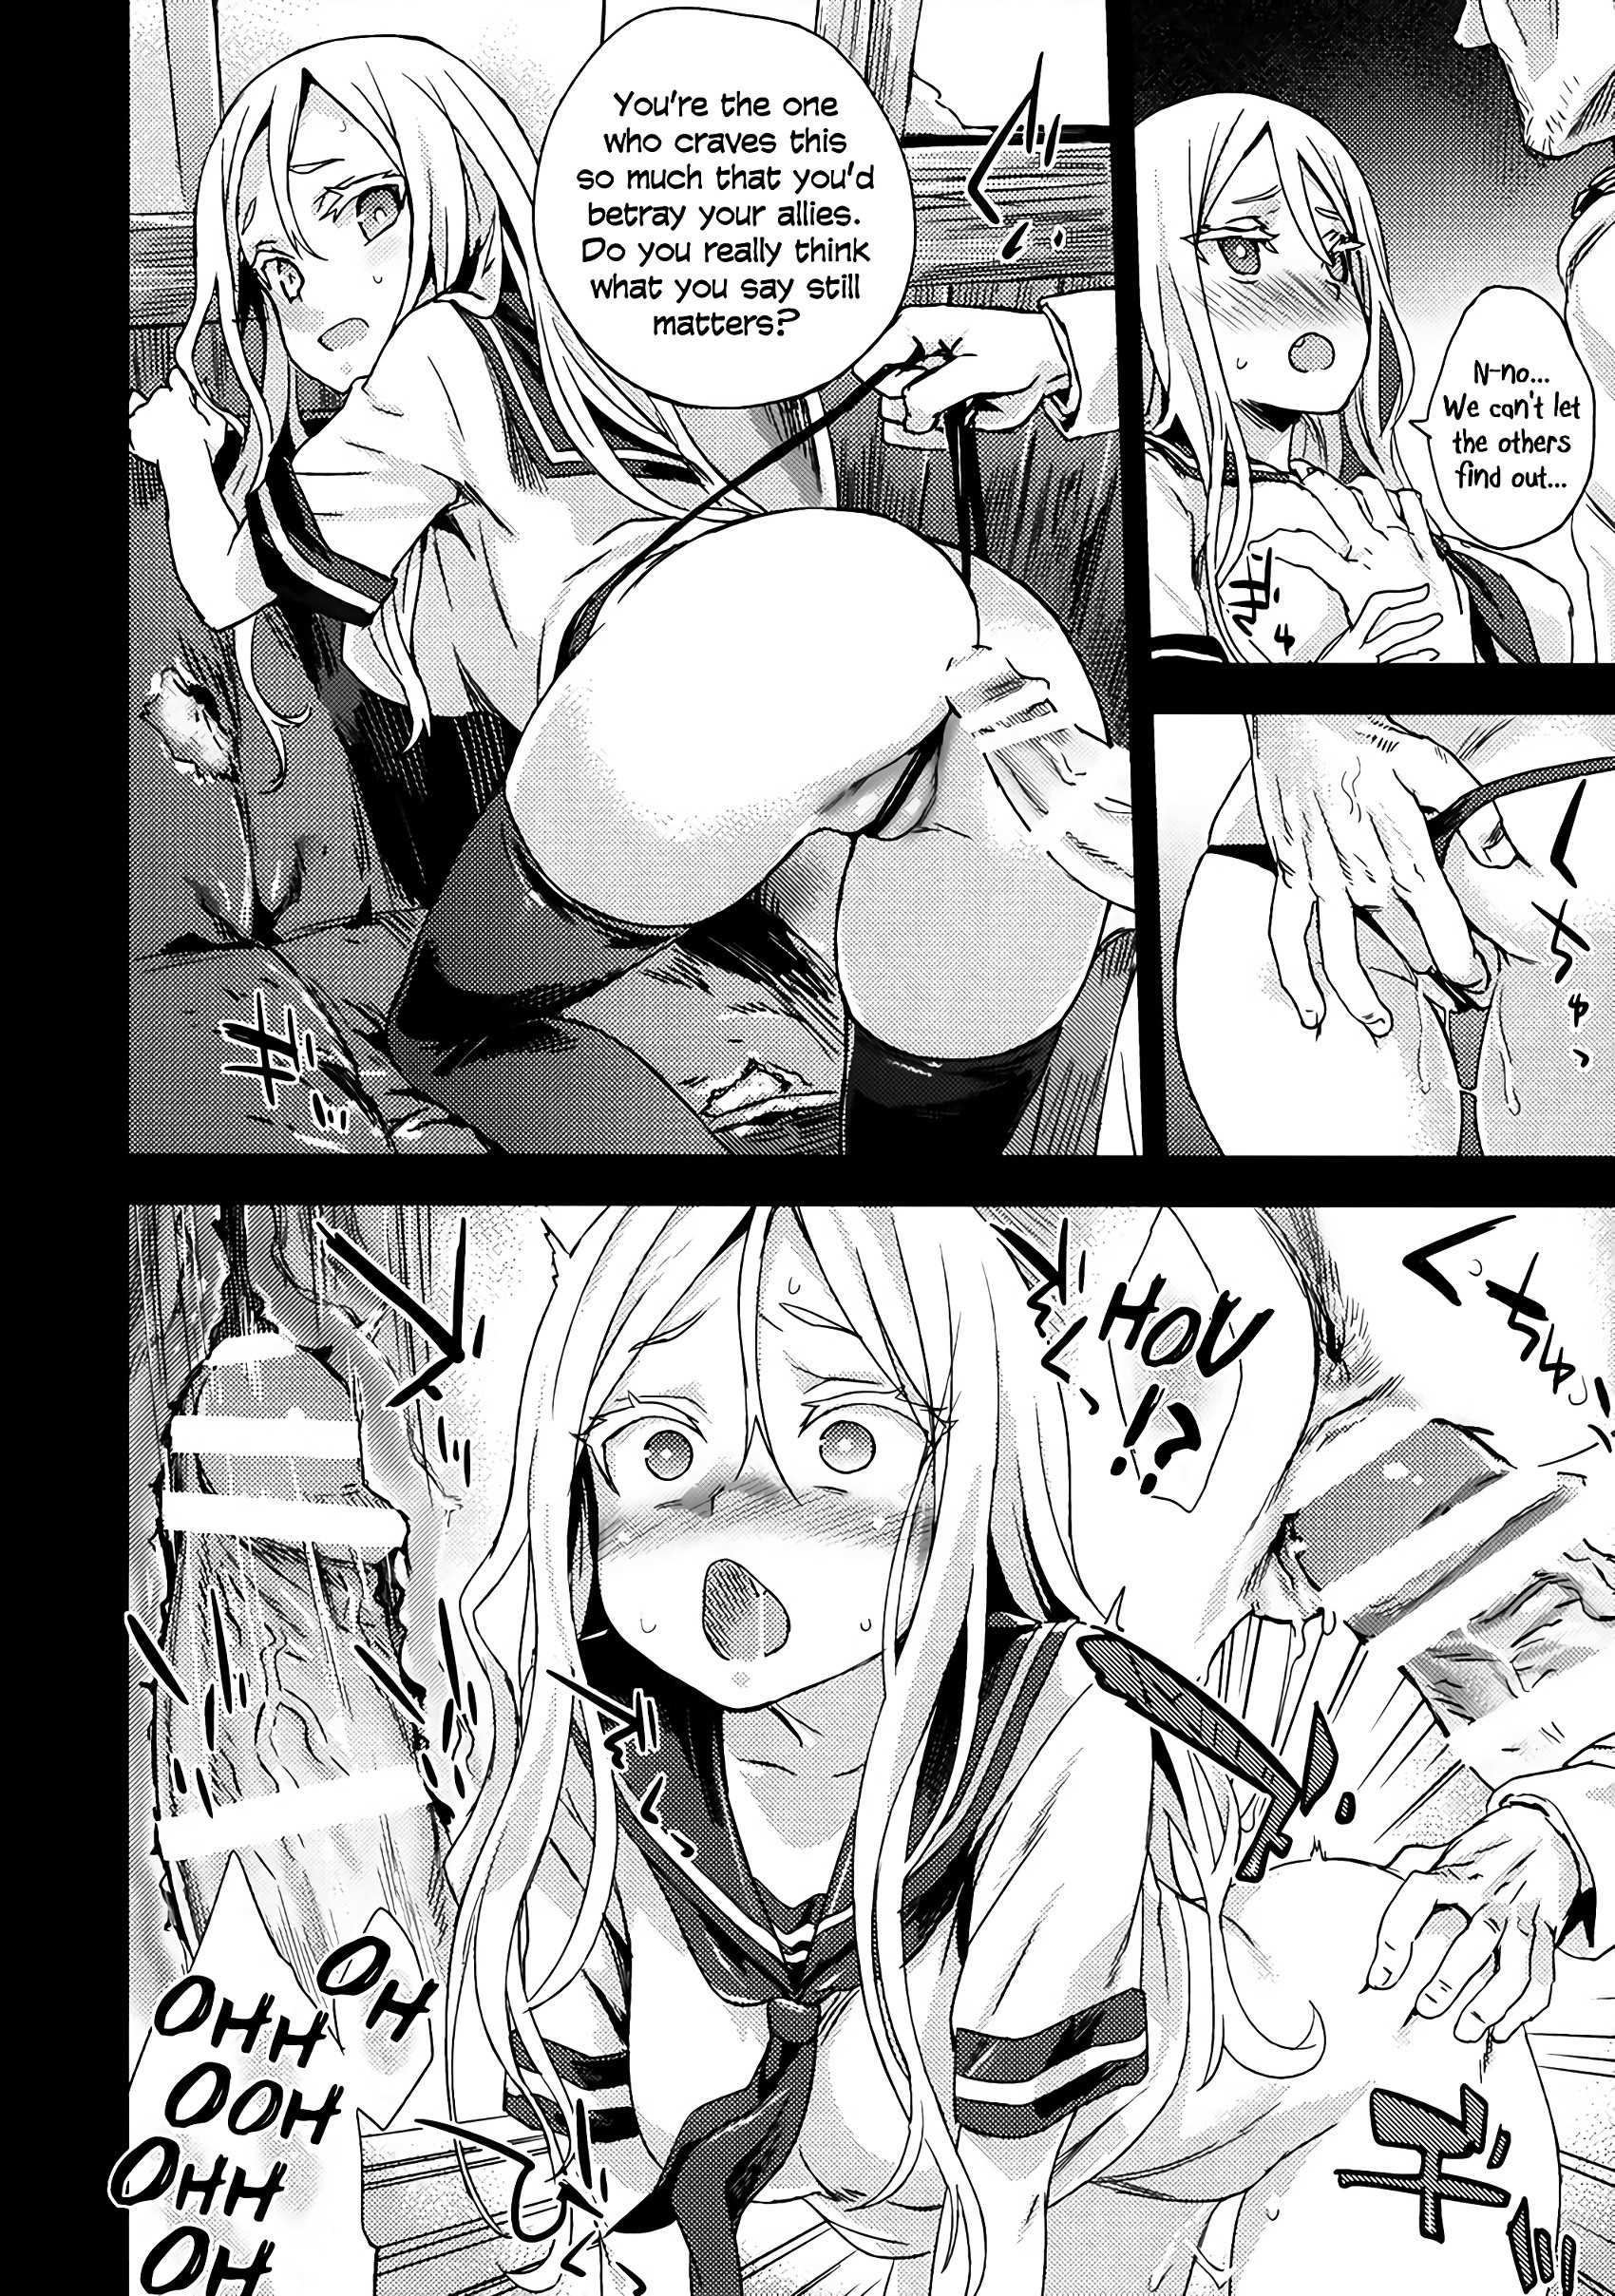 VictimGirls 17 SOS hentai manga picture 7